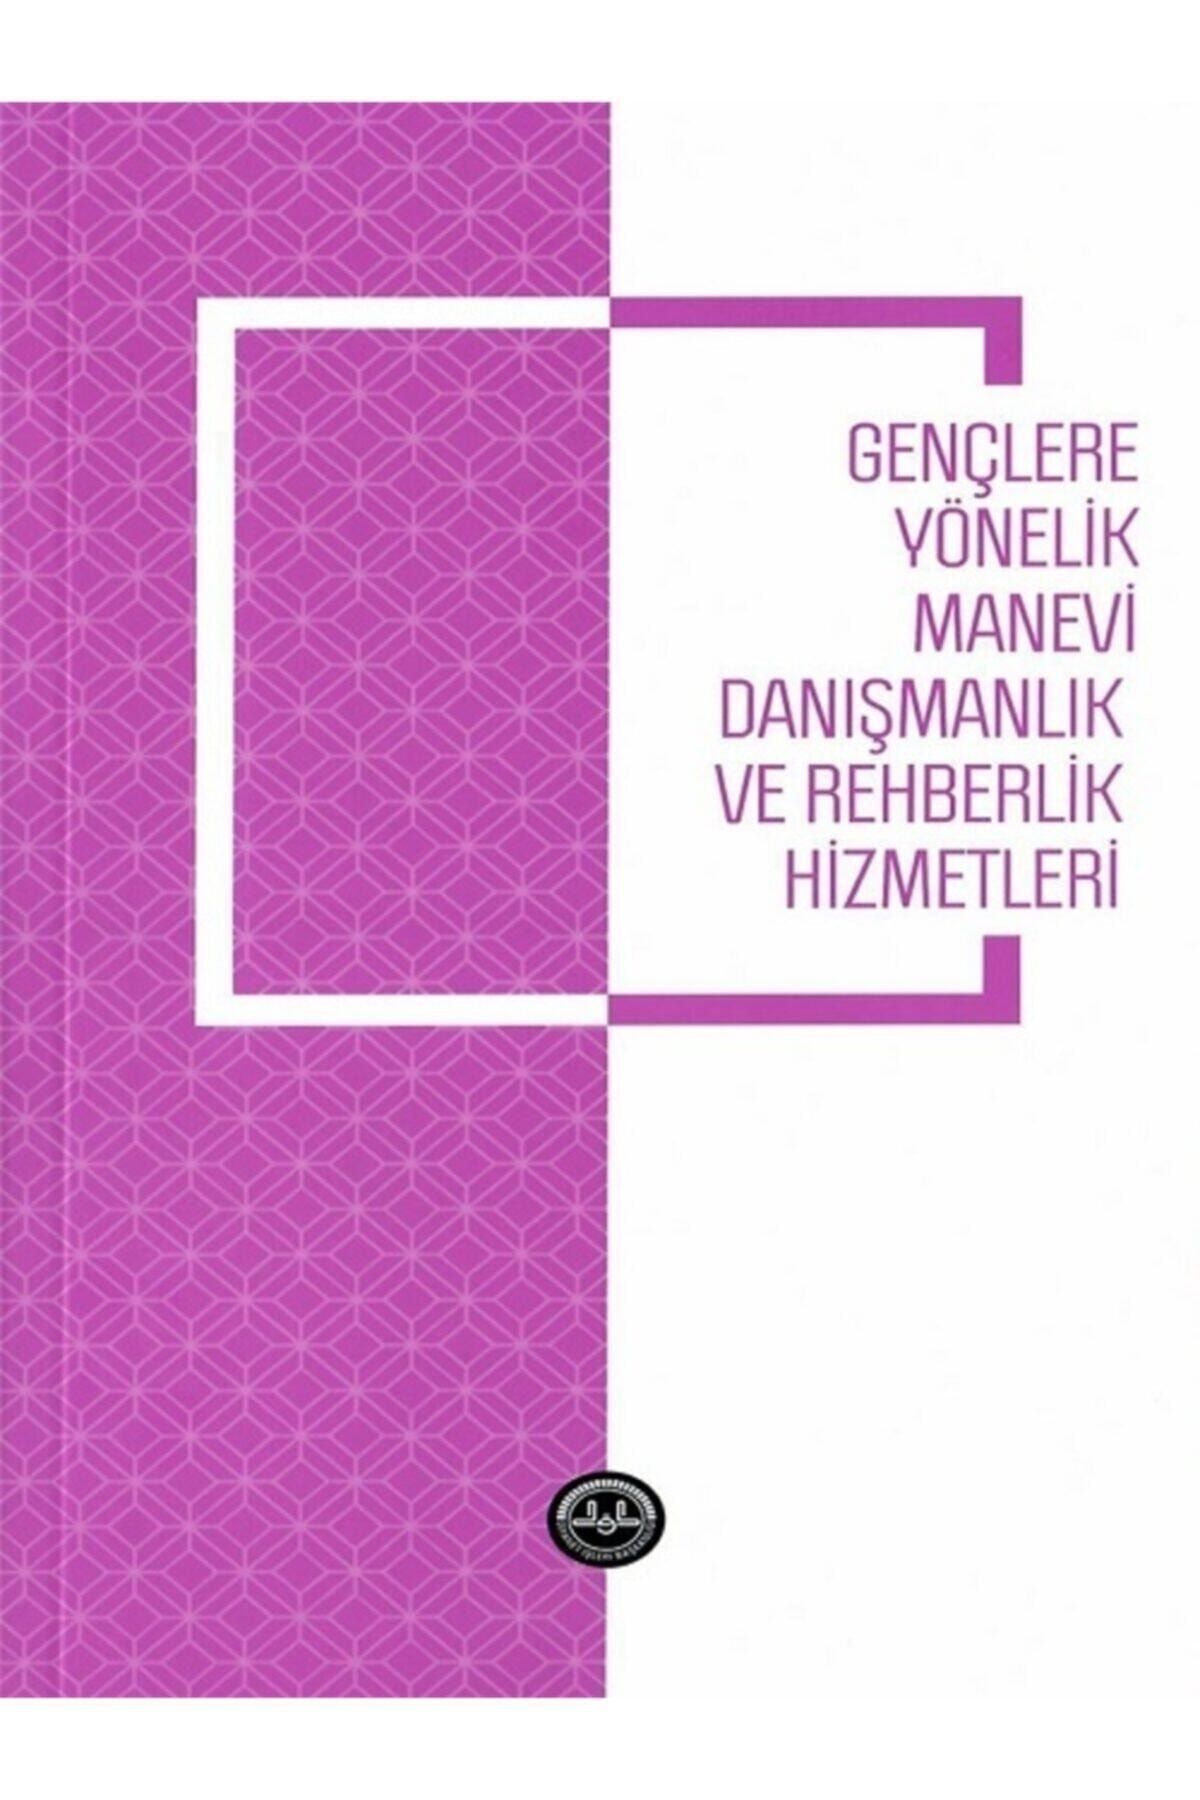 Türkiye Diyanet Vakfı Yayınları Gençlere Yönelik Manevi Danışmanlık Ve Rehberlik Hizmetleri